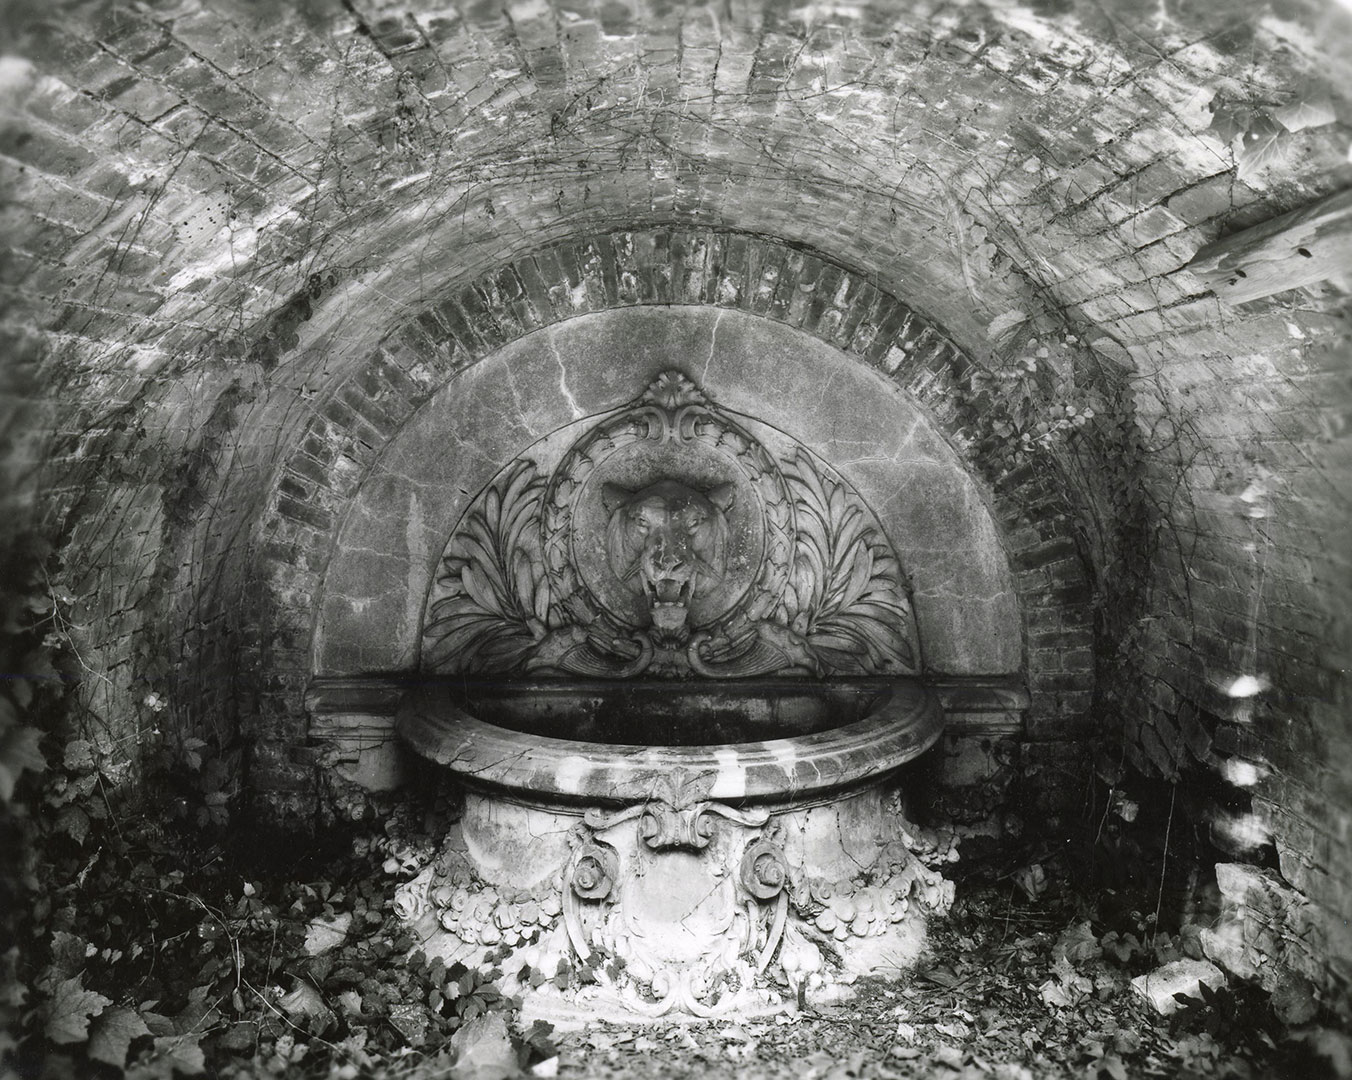 Tiger Fountain, Drumthwacket, c. 1910